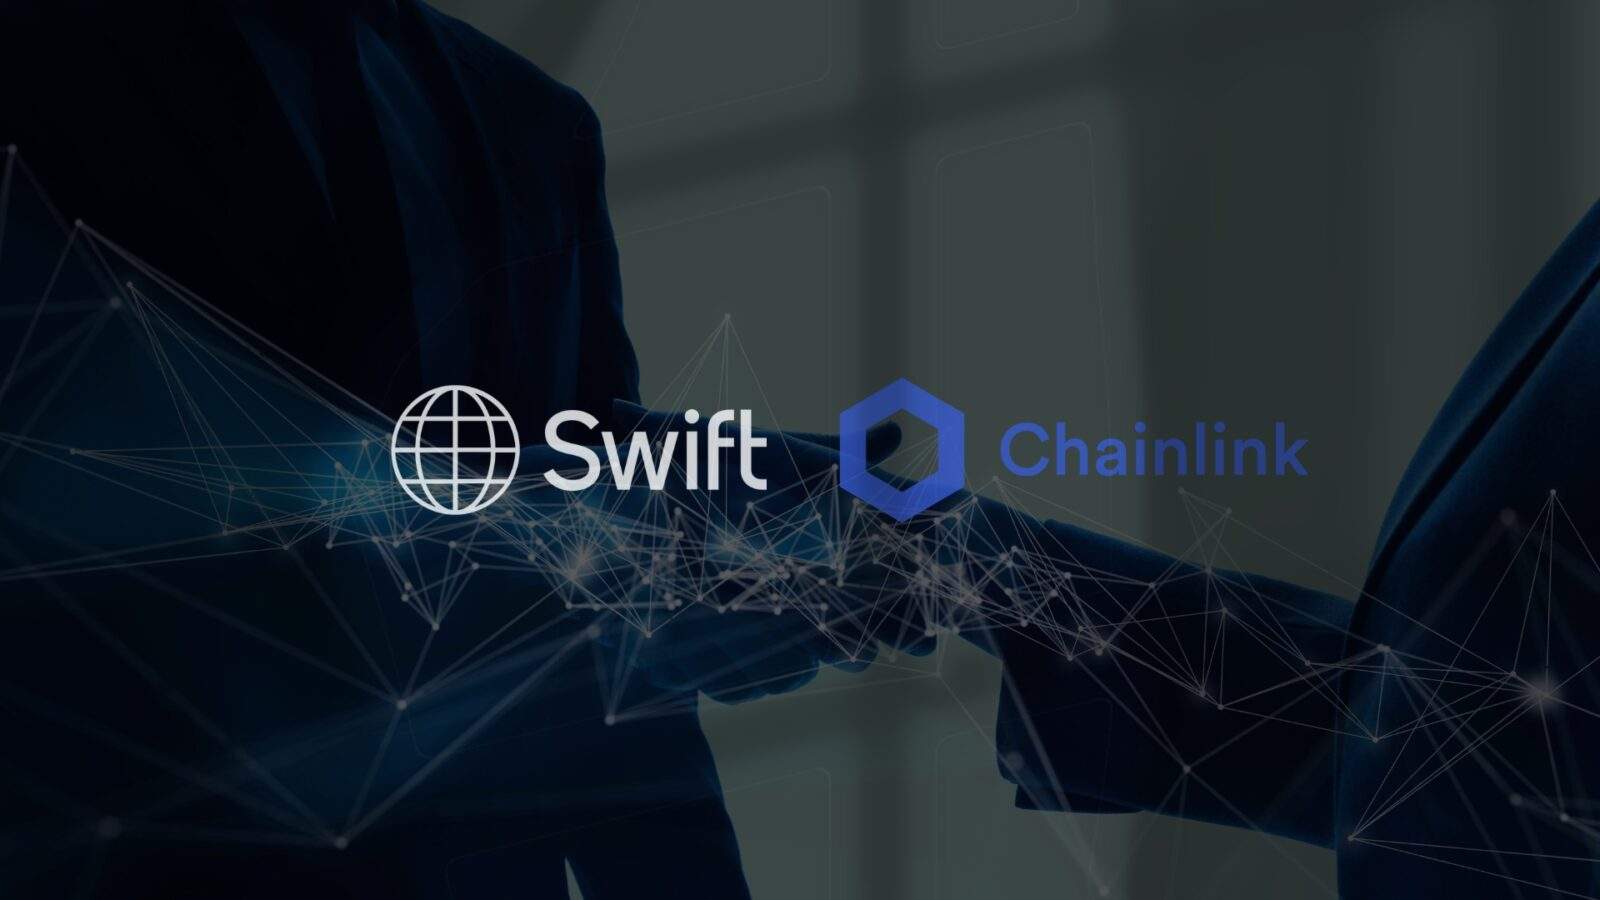 Oznámenie spolupráce SWIFT a Chainlink s cieľom zefektívniť zúčtovanie tokenizovaných aktív